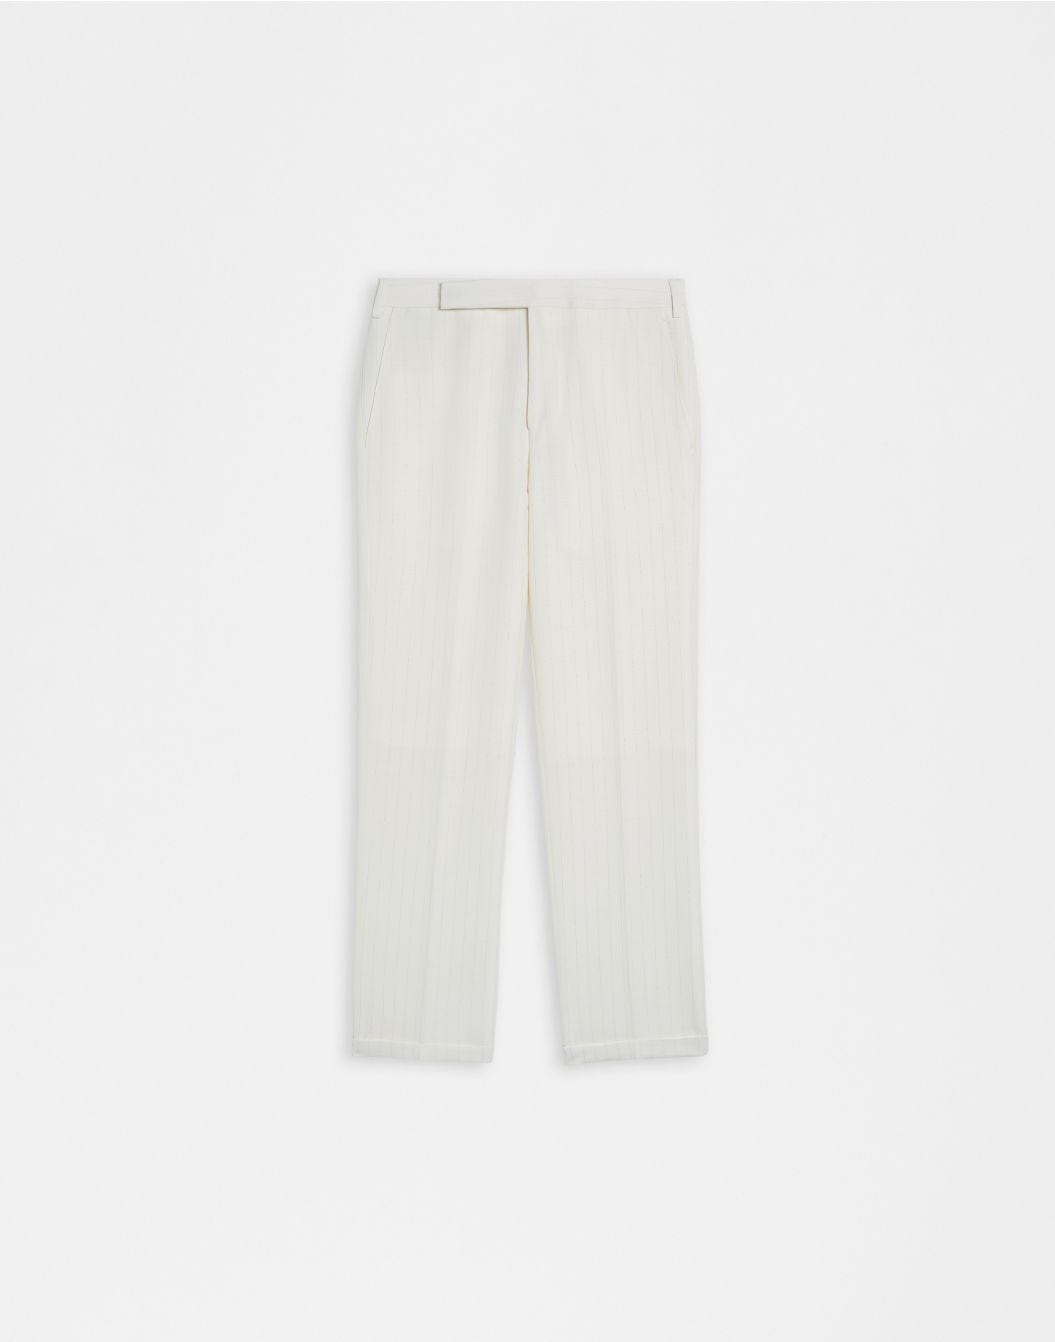 Pantalon en toile de laine à rayures en lurex blanc et argenté